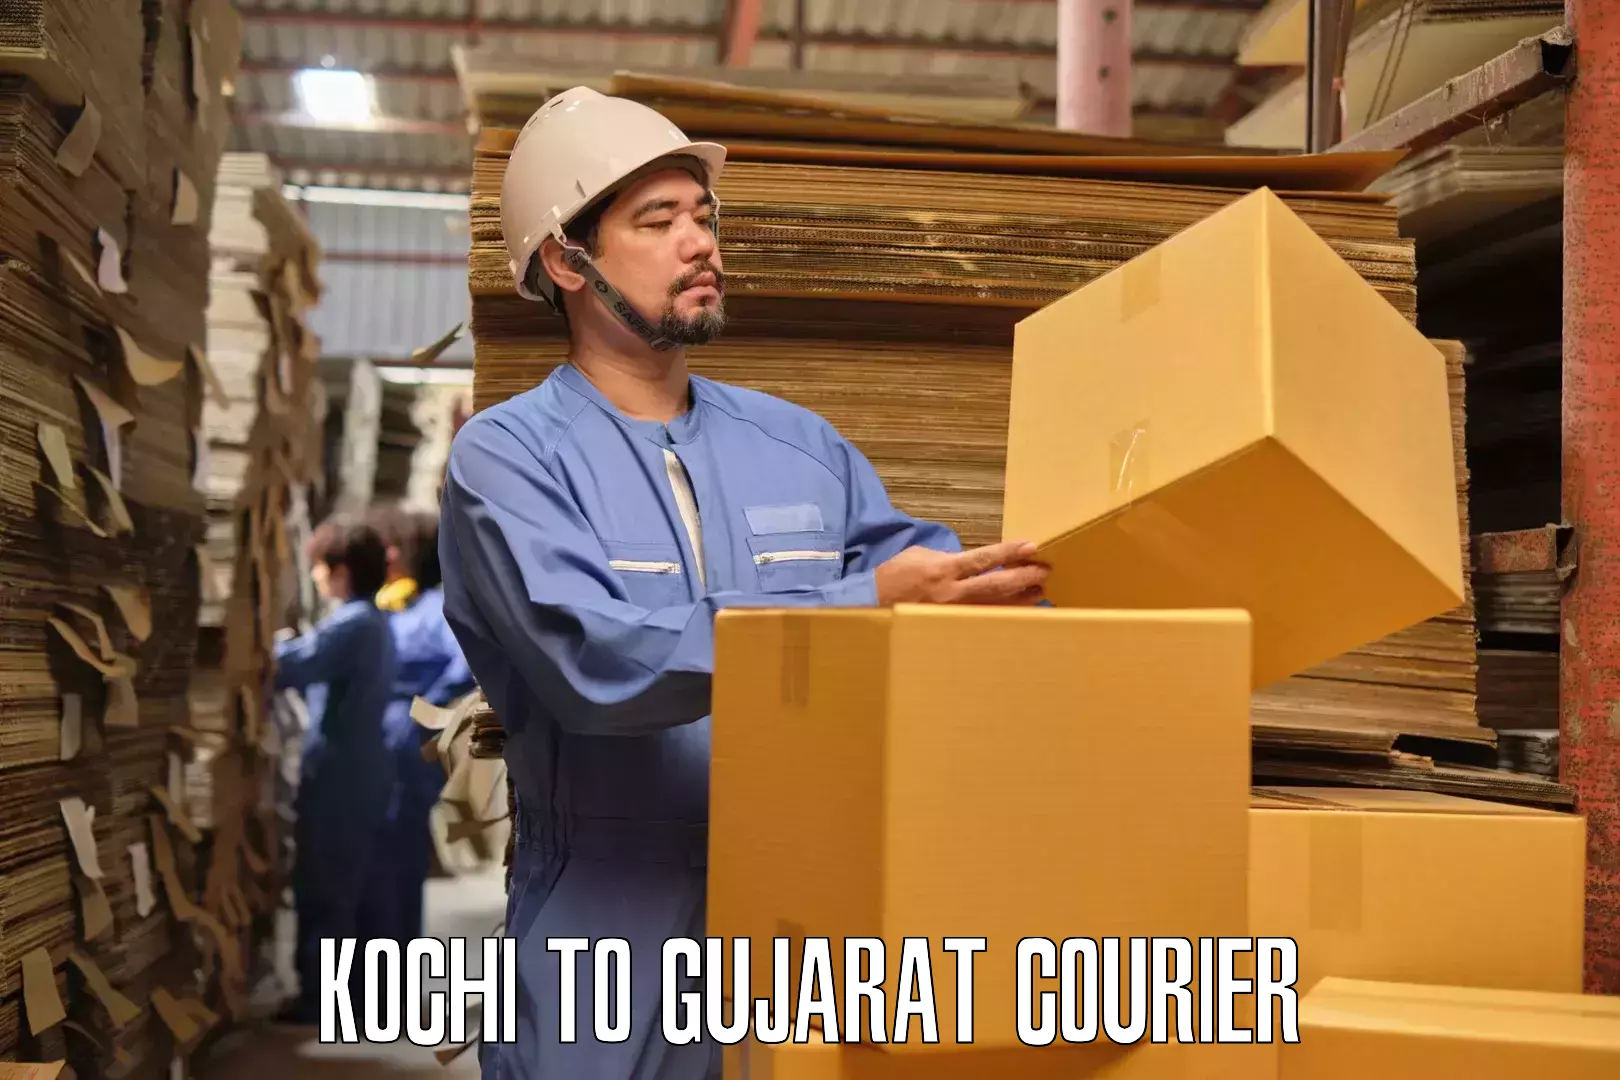 Furniture moving experts Kochi to Dhoraji